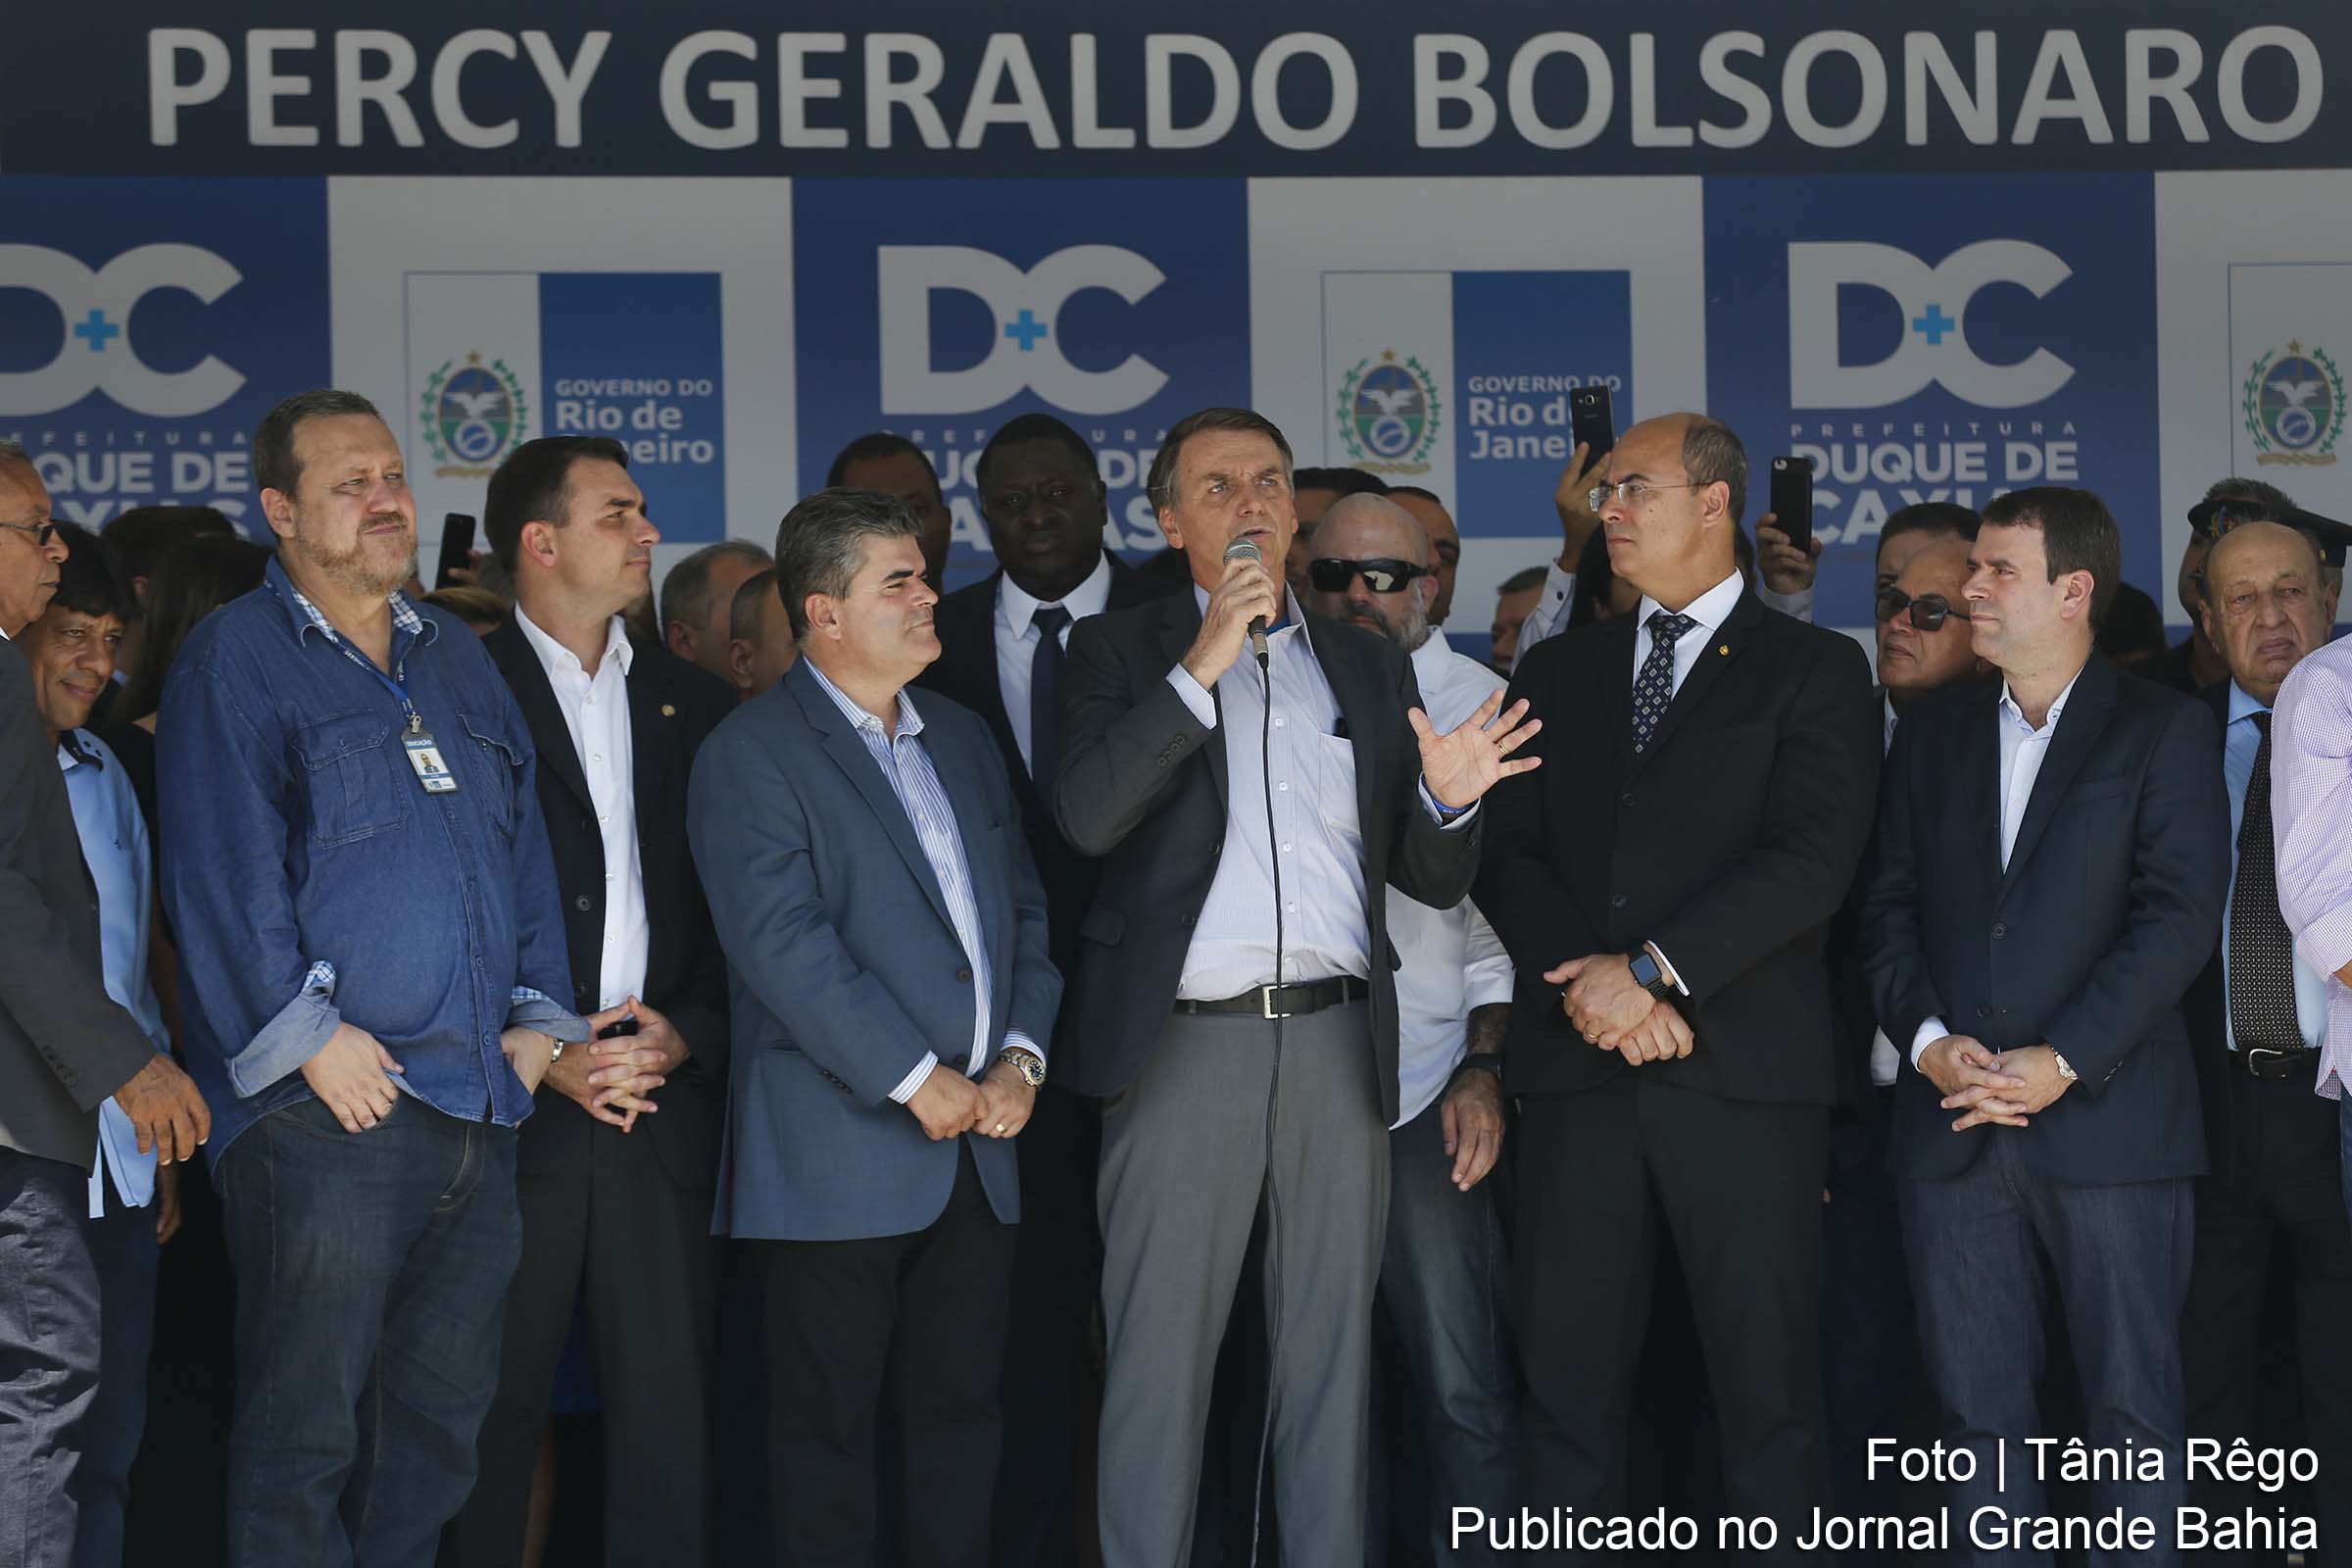 O presidente eleito, Jair Bolsonaro, falou sobre a Terra Indígena Raposa Serra do Sol após a inauguração de colégio da PM em Duque de Caxias, no Rio de Janeiro. O colégio tem o nome do pai de Bolsonaro.